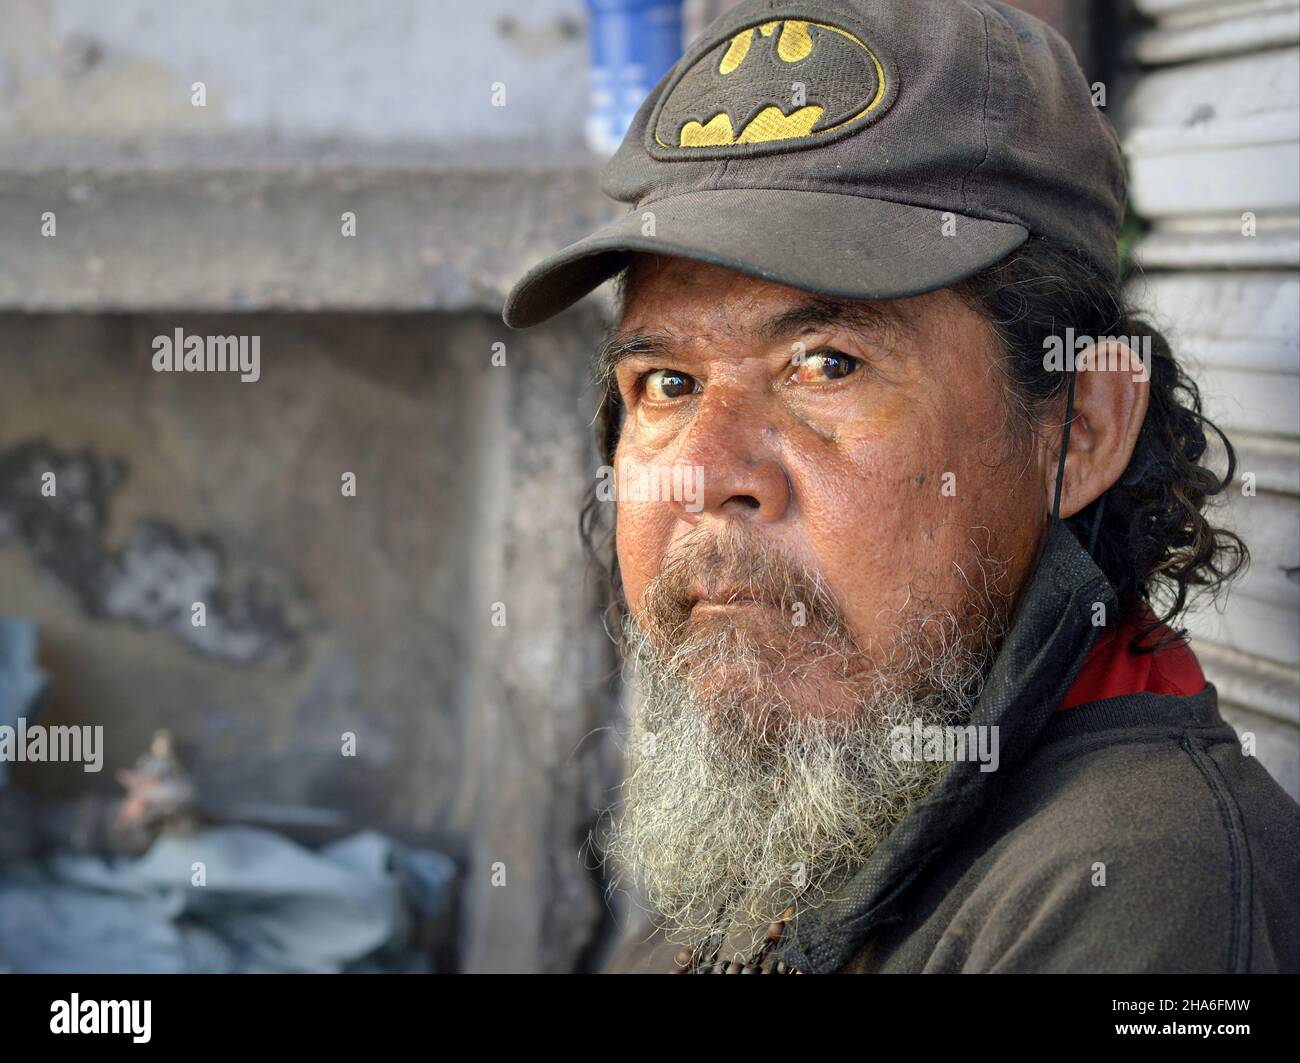 Älterer, robuster, obdachloser mexikanischer Mann mit grauem Bart und zerzaust behaartem Haar trägt eine abgenutzte Baseballmütze und blickt auf den Betrachter. Stockfoto